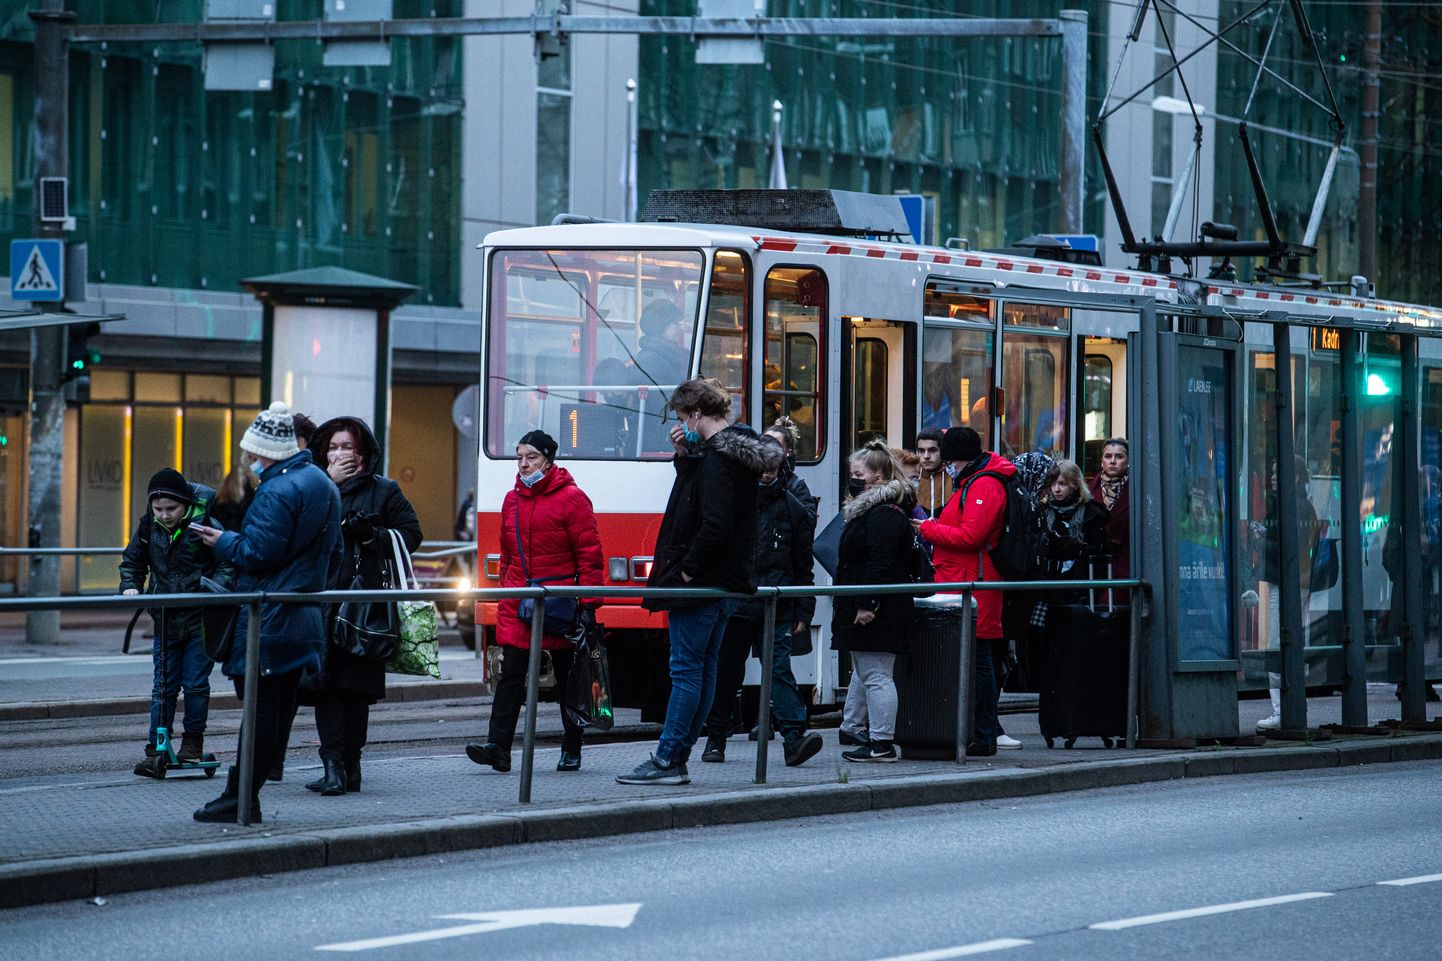 Inimesed maskides. Eestis hakkas 24. novembrist avalikes kohtades kehtima maski kandmise kohustus. Maskidega inimesed tänavatel ja ühistranspordis.